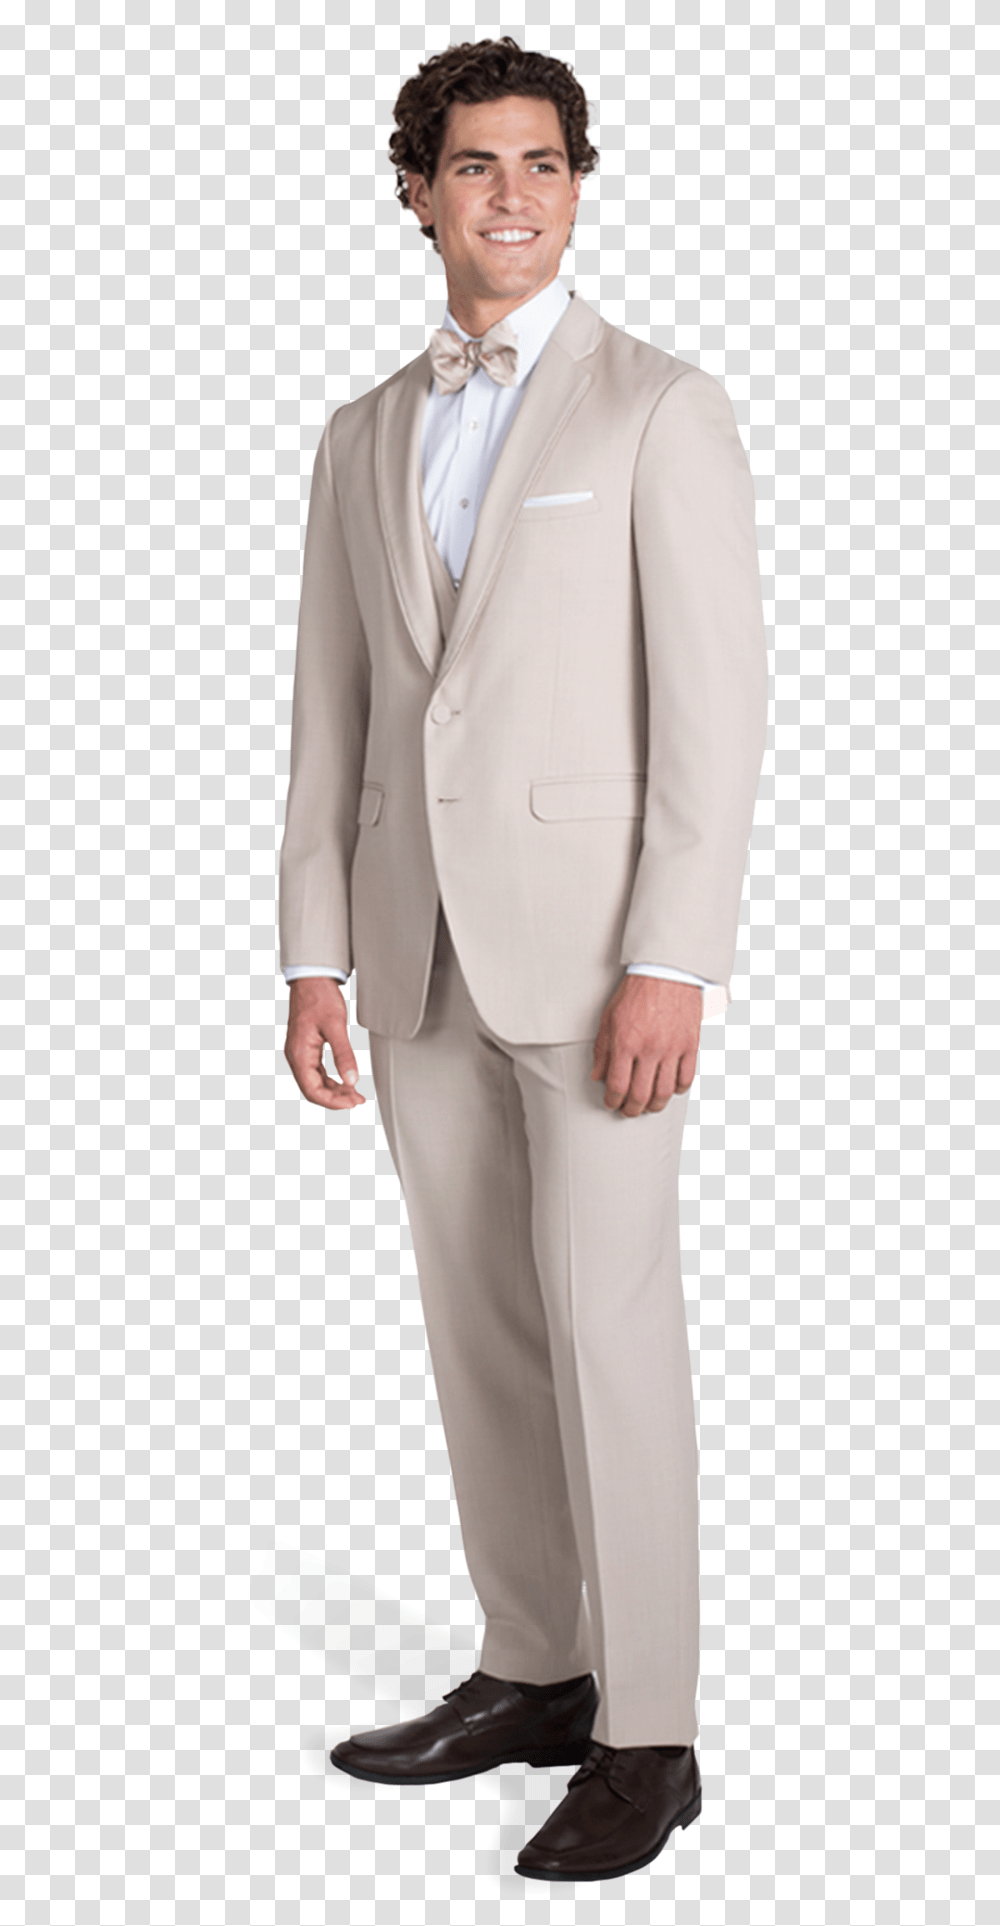 Tan Notch Lapel Suit Tuxedo, Overcoat, Person, Man Transparent Png